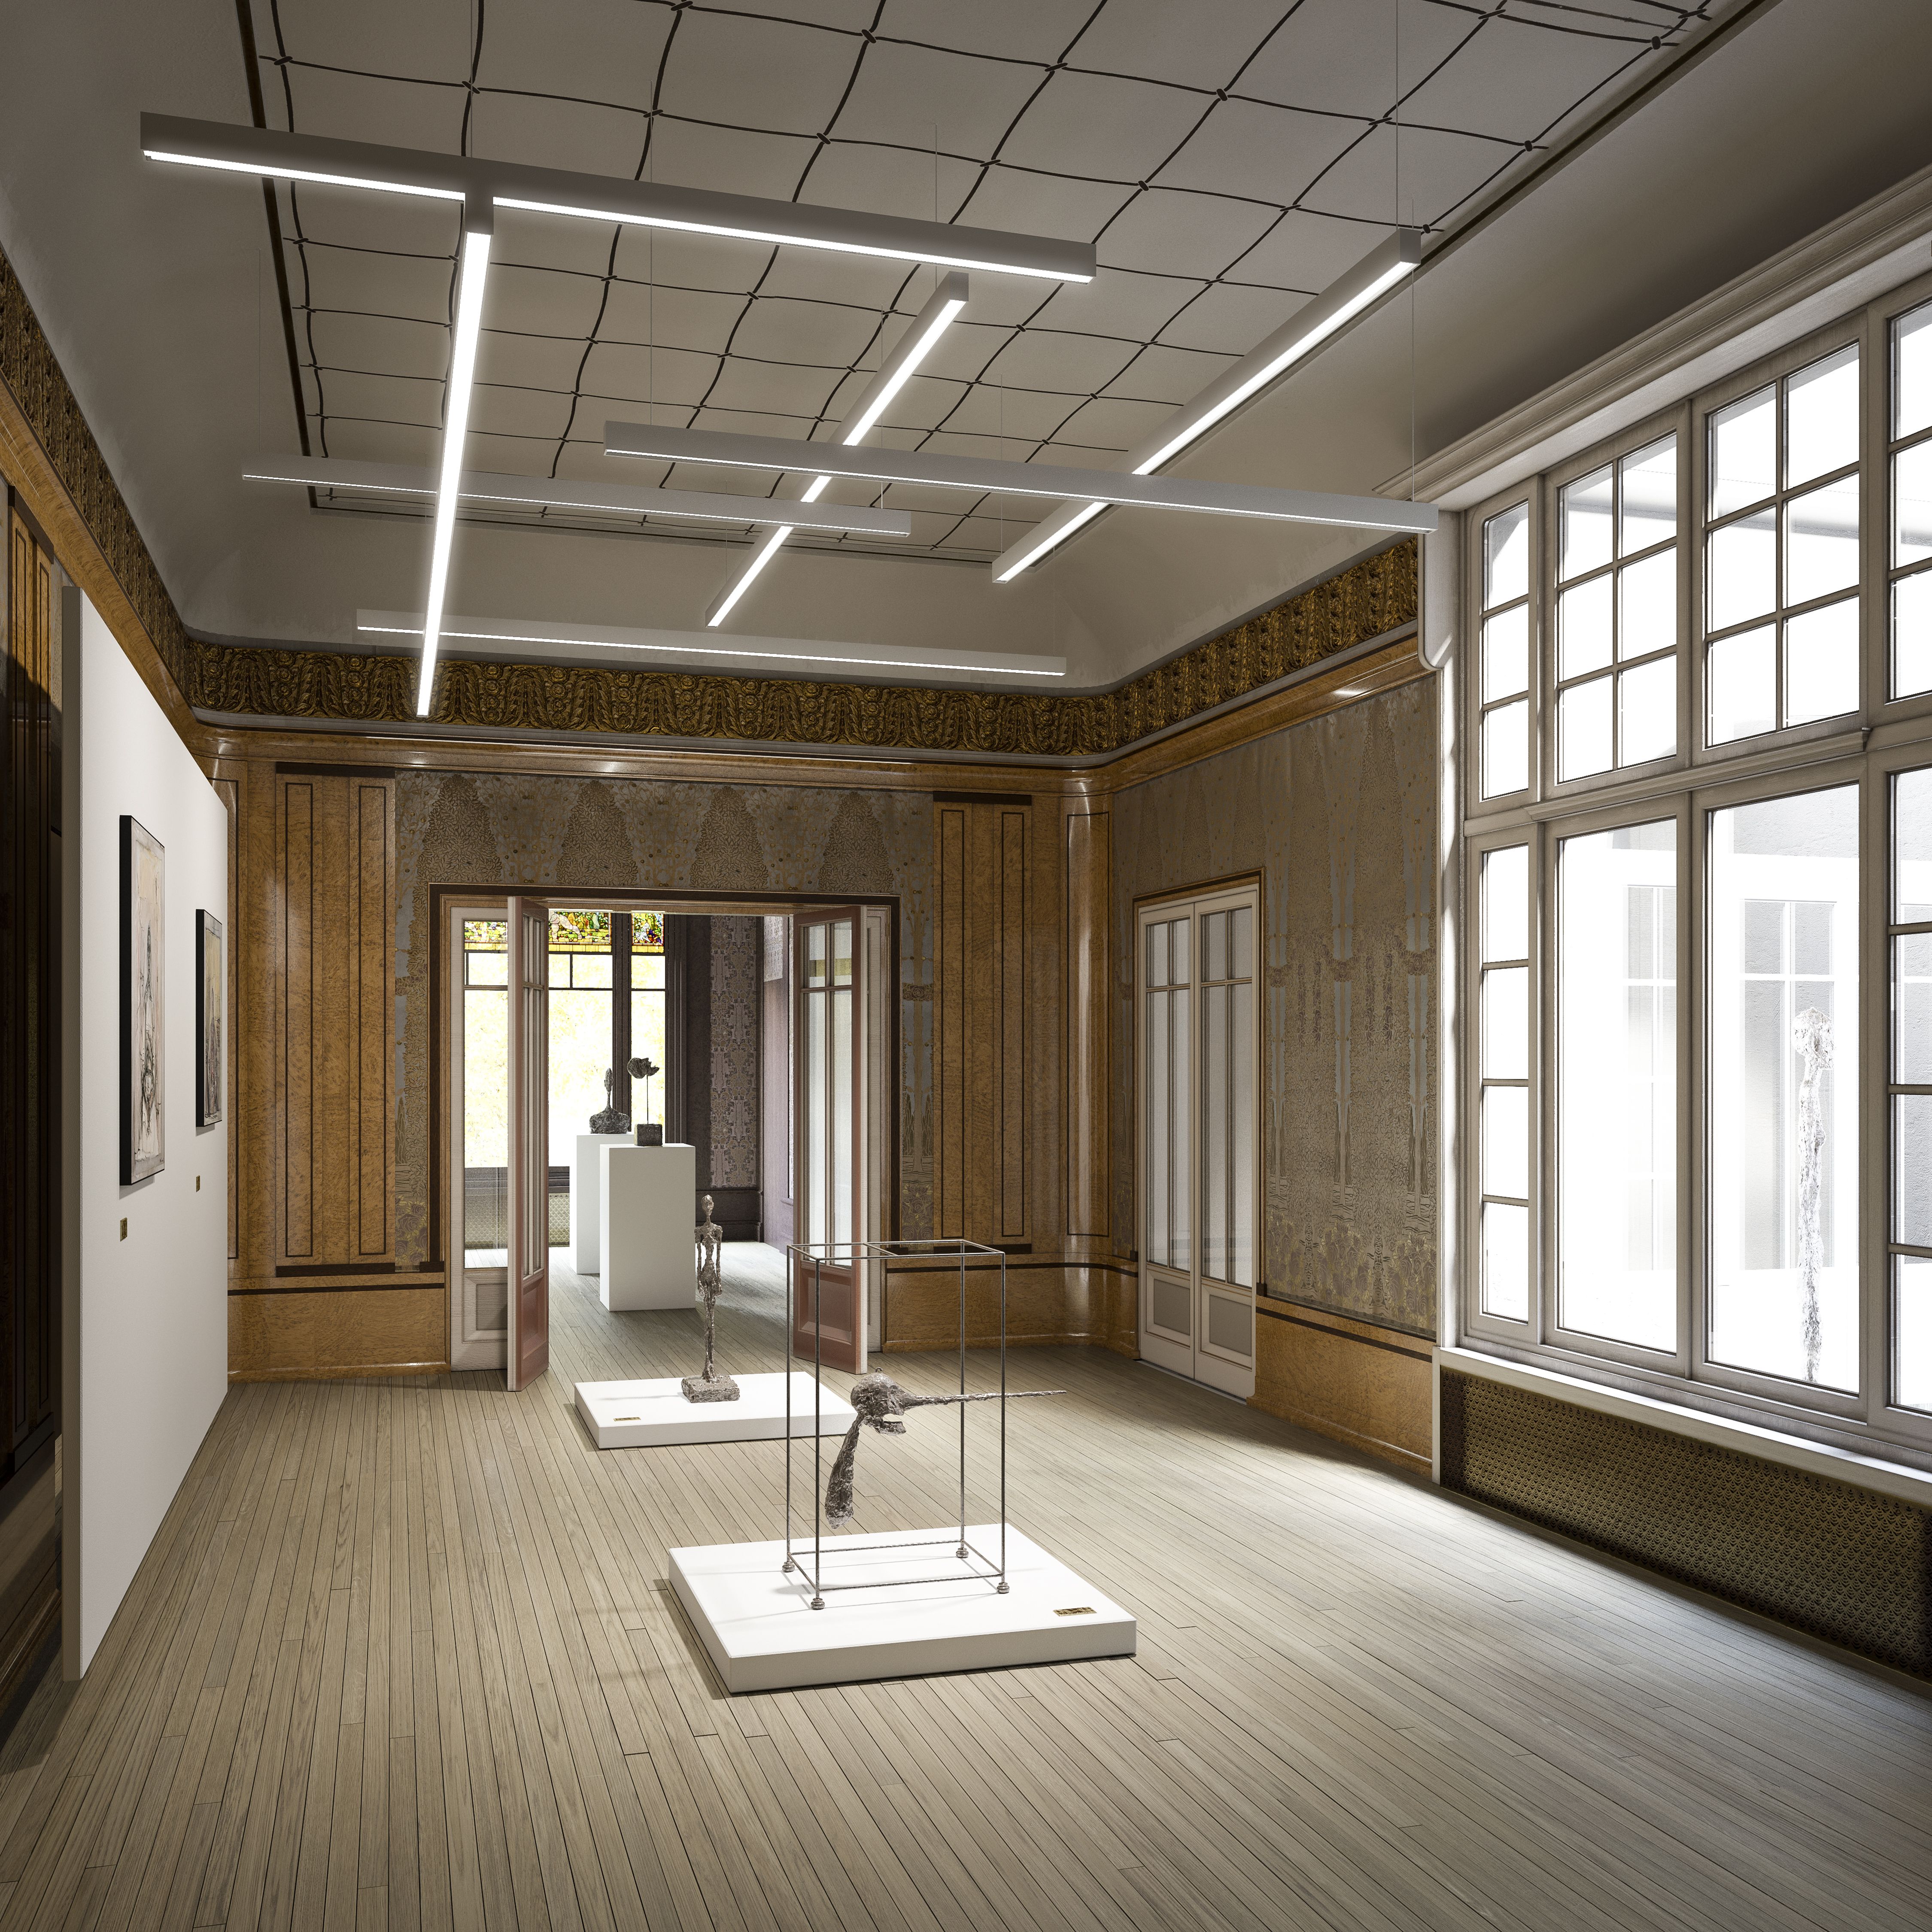 Alberto Giacometti in mostra a Parigi - immagine 19